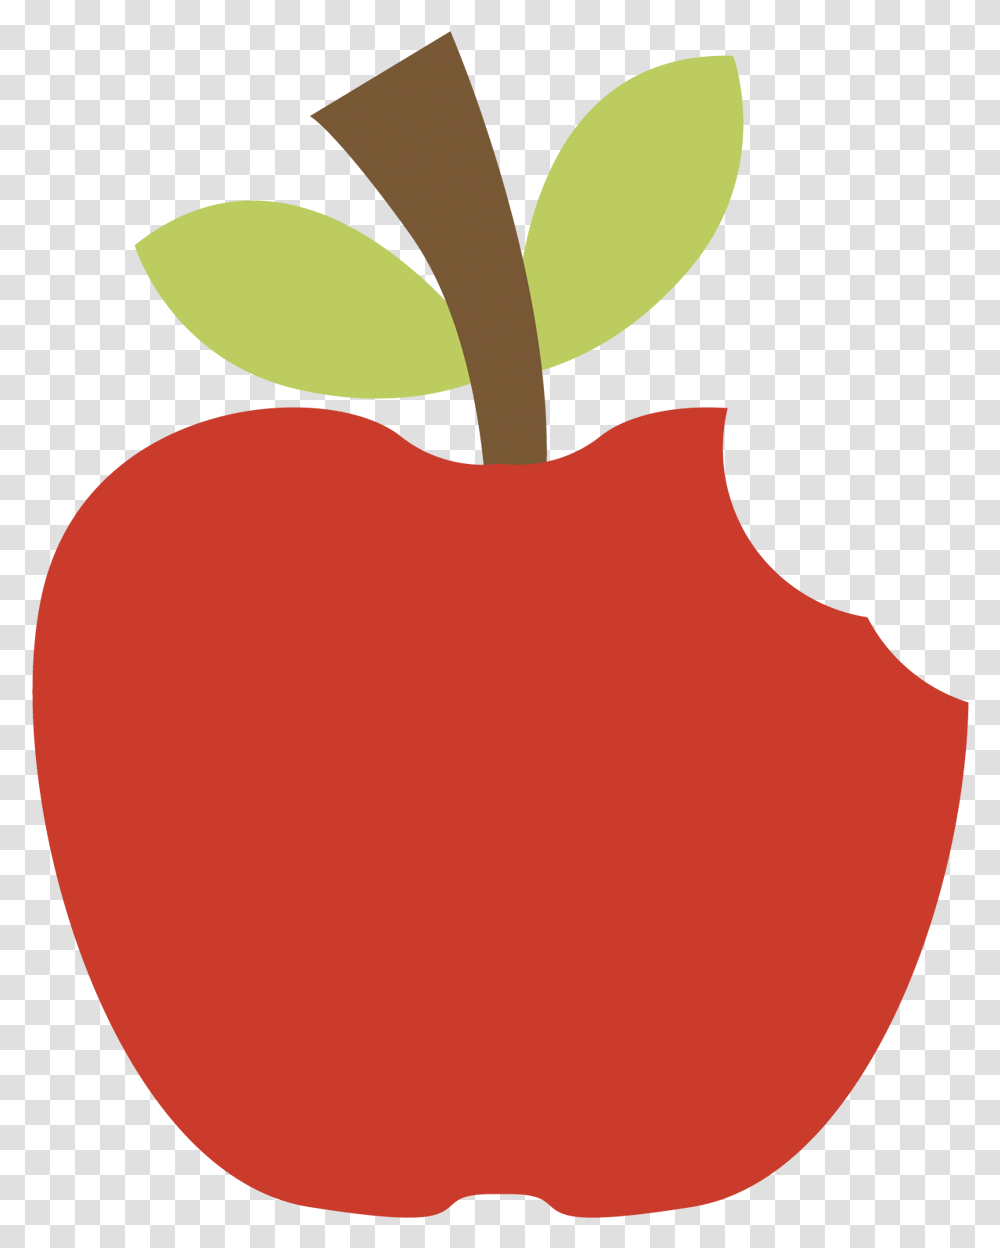 Apple Clipart Snow White Branca De Neve, Plant, Fruit, Food Transparent Png